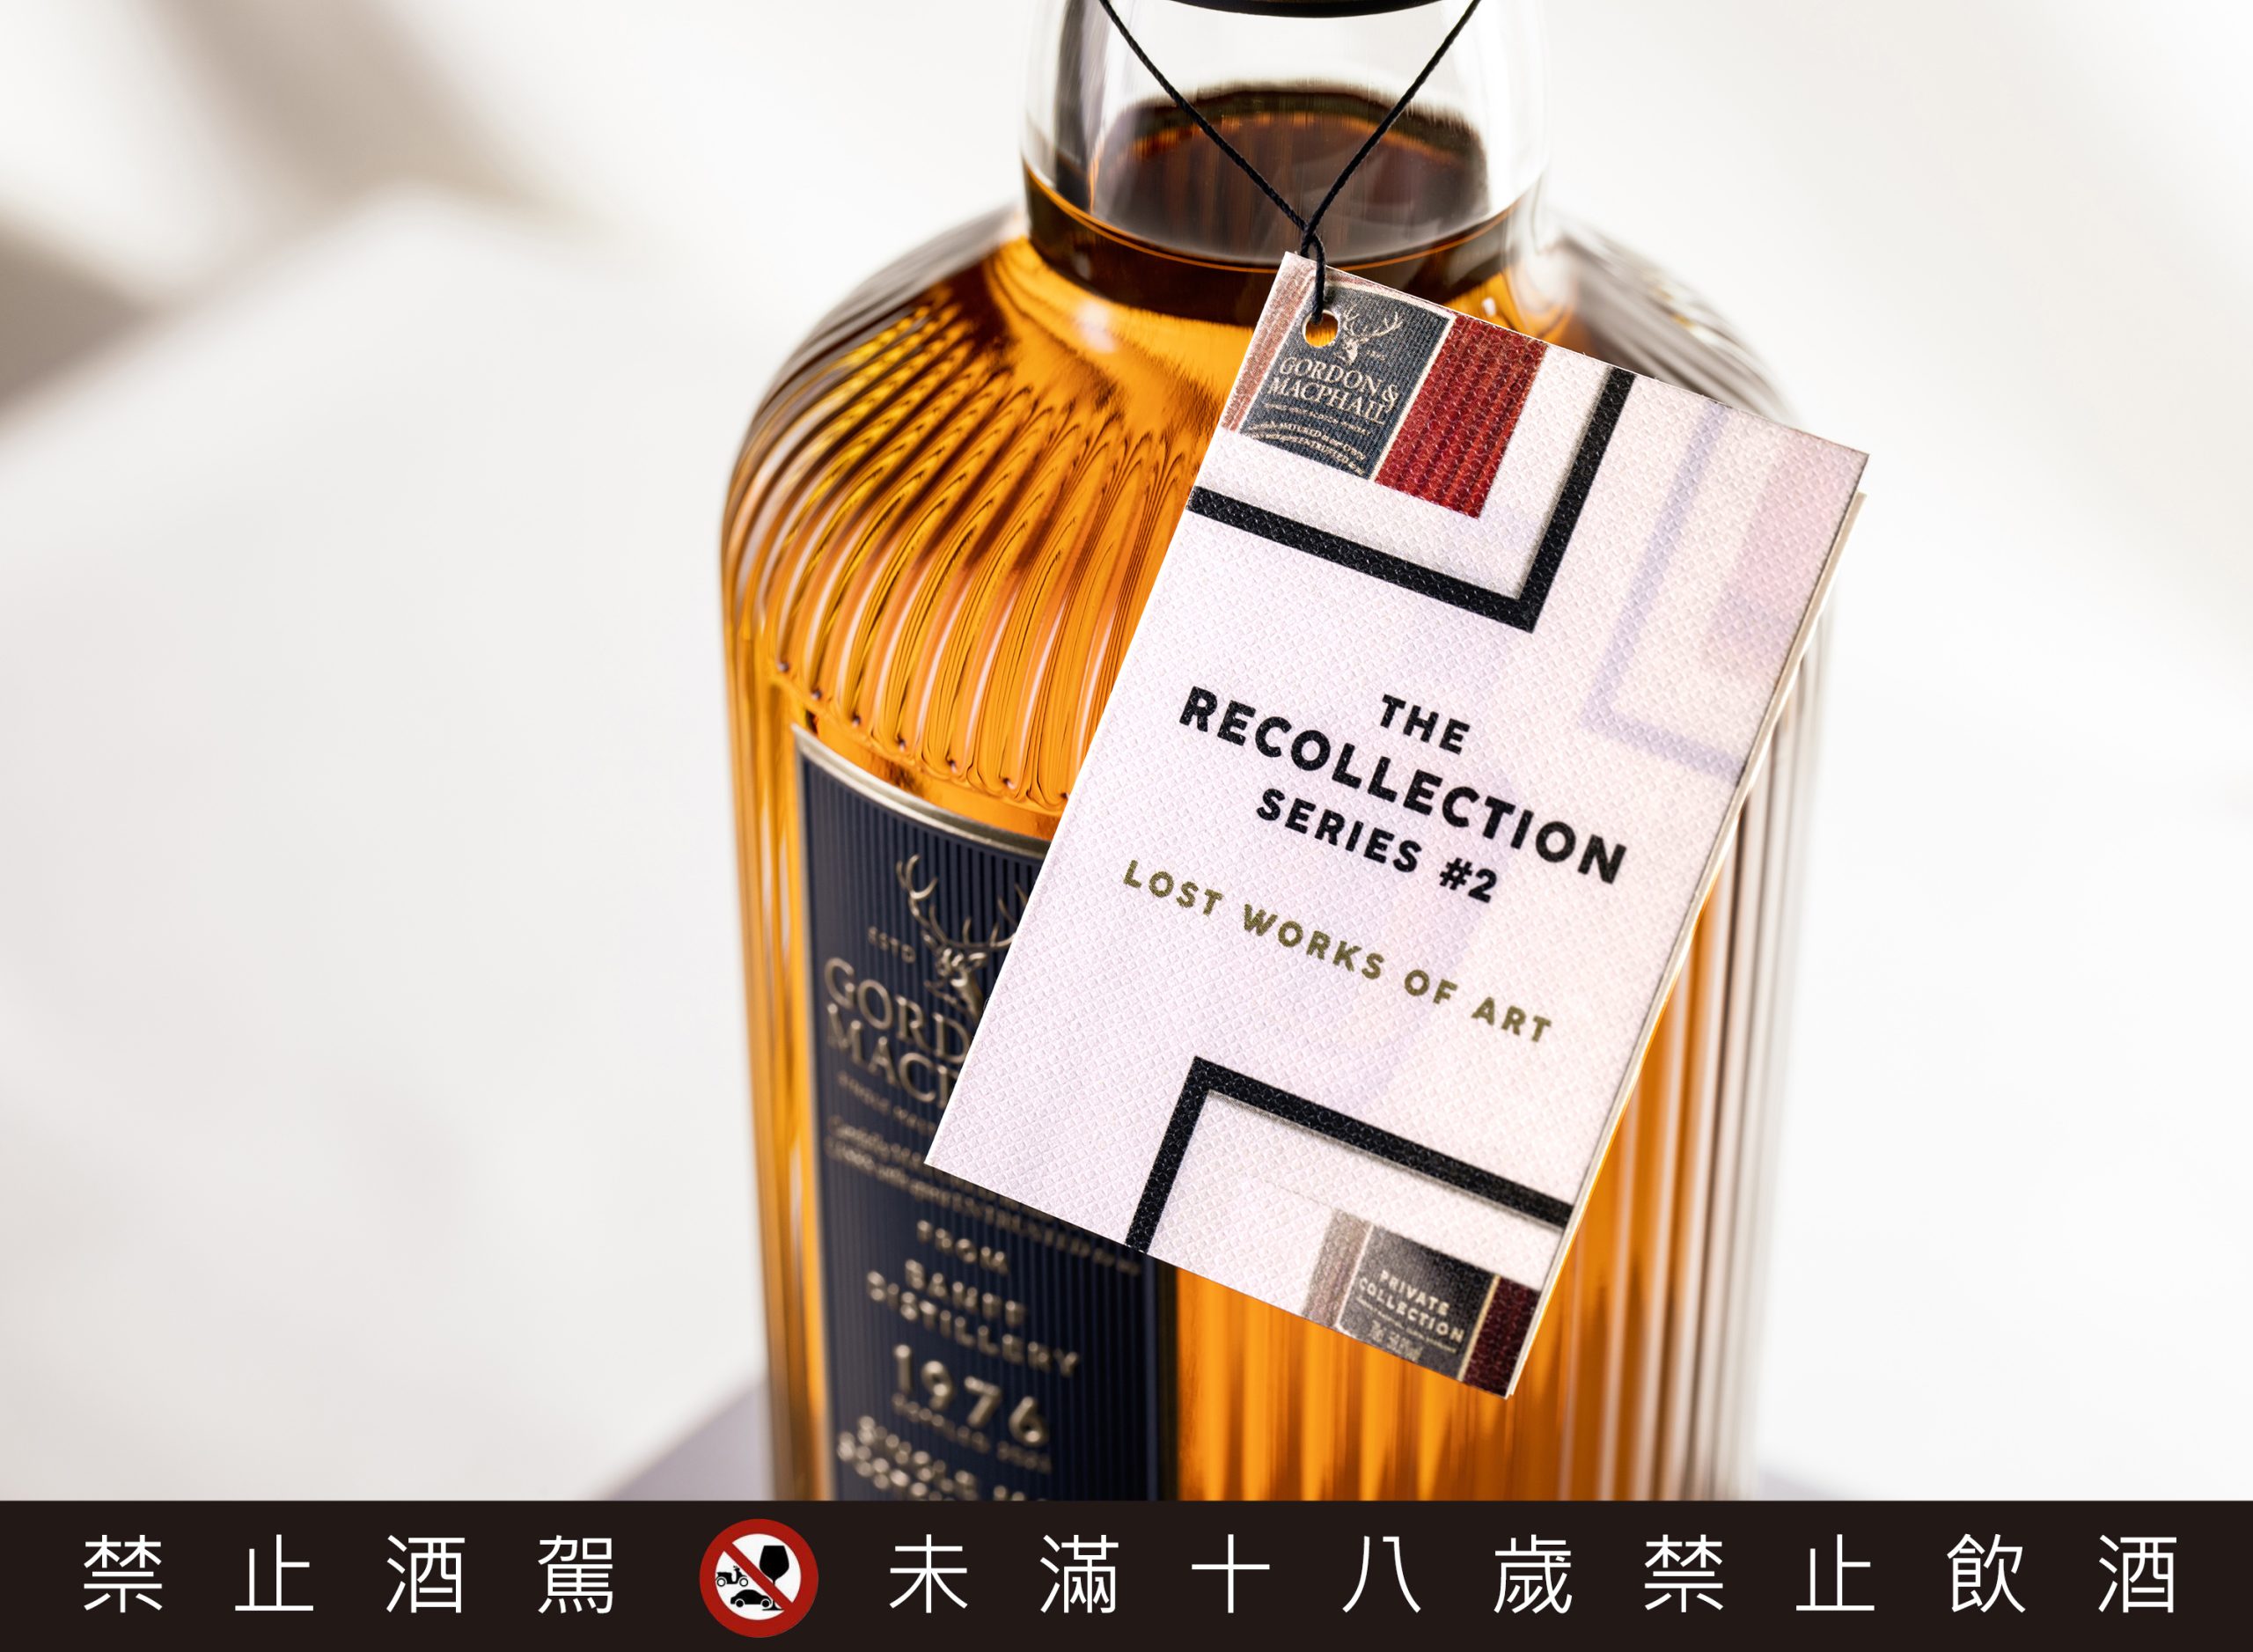 滄海桑田的風味｜蘇格蘭威士忌蒸餾廠珍貴酒藏推薦